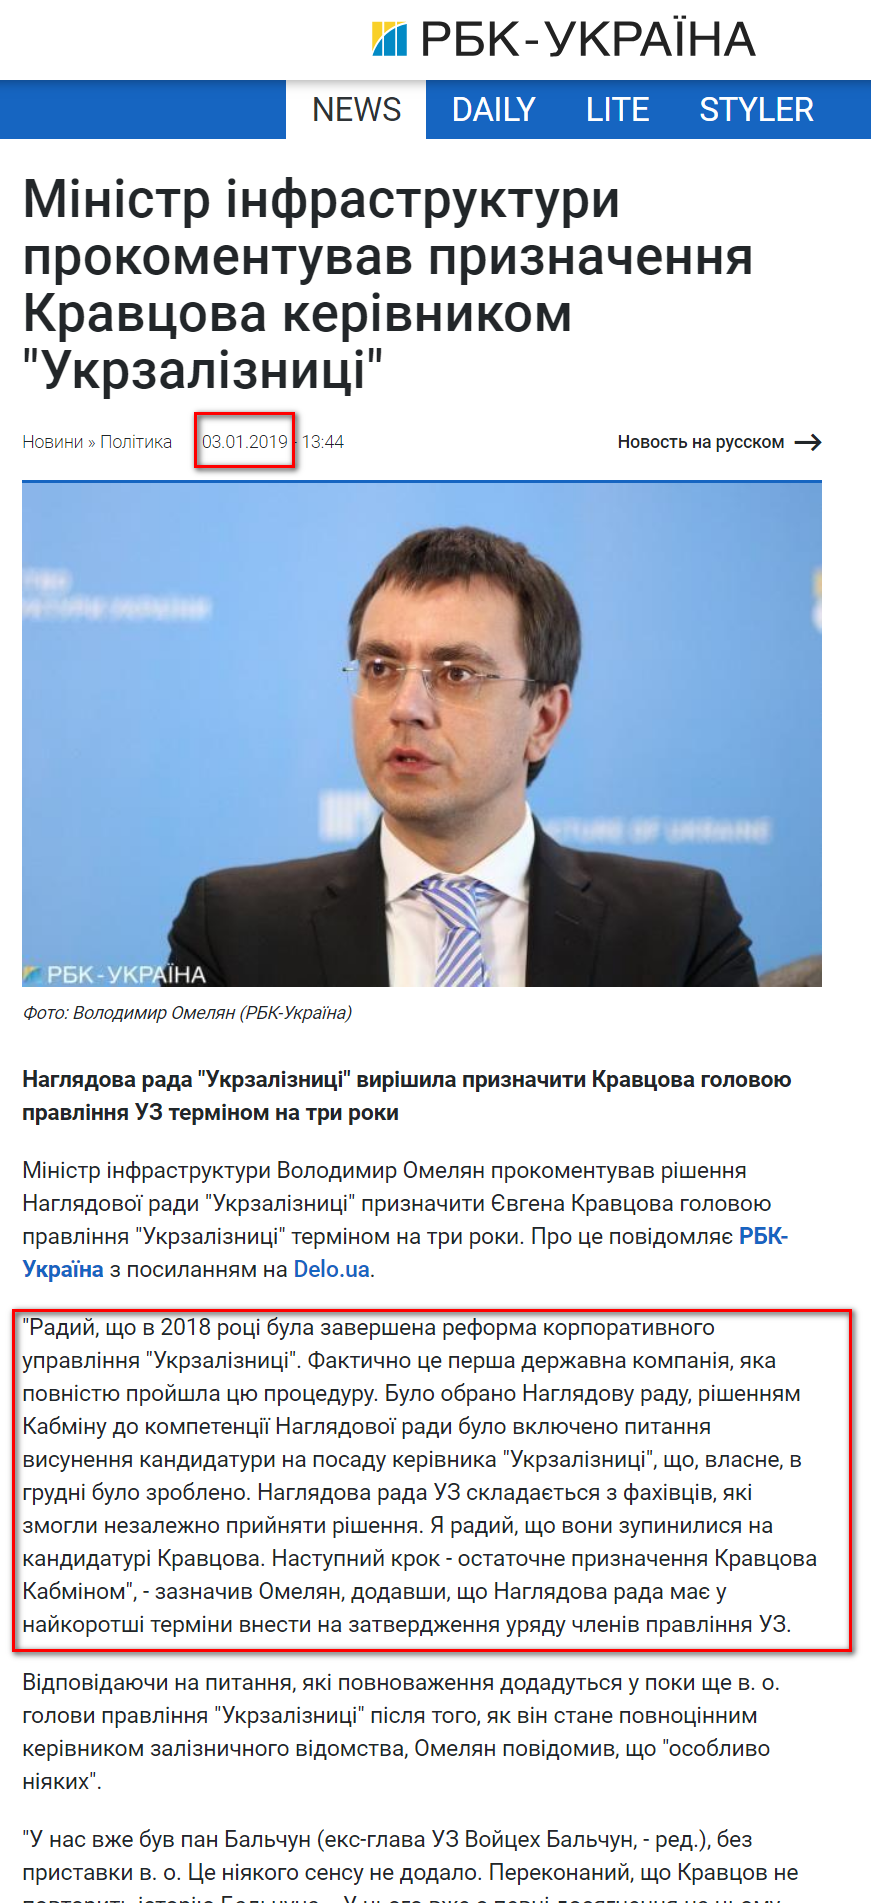 https://www.rbc.ua/ukr/news/ministr-infrastruktury-prokommentiroval-naznachenie-1546515827.html